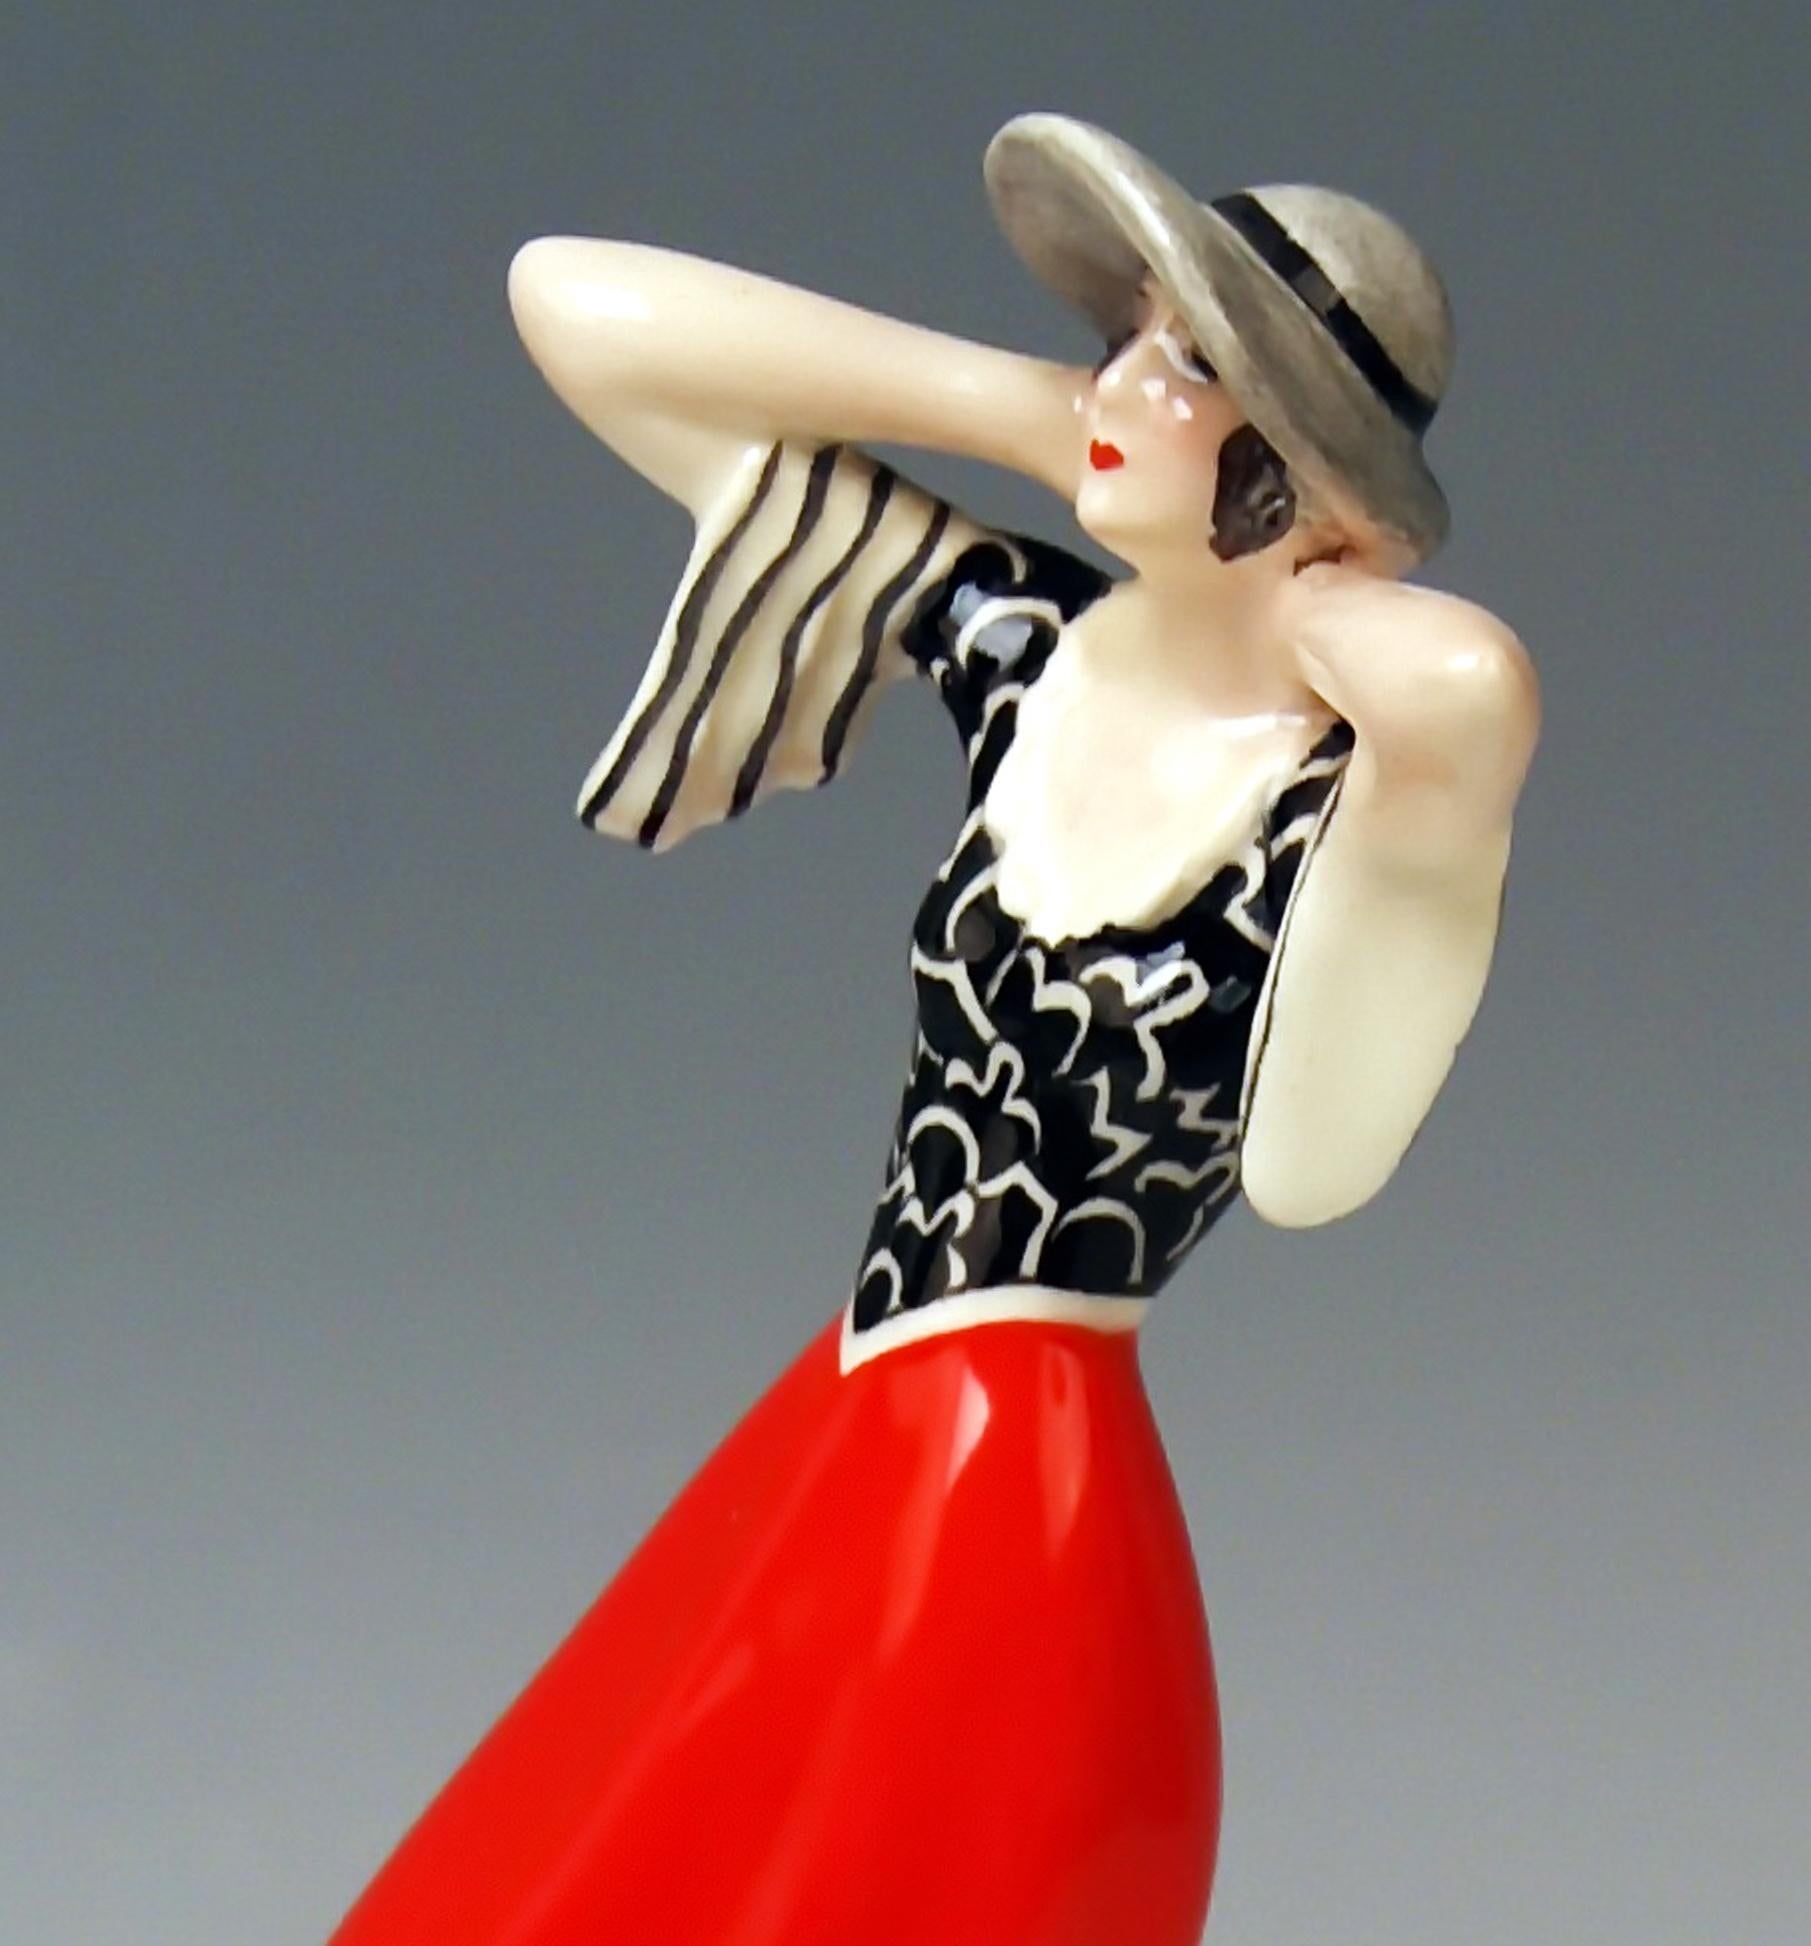 Goldscheider Vienna walking lady wearing hat: This figurine is called 